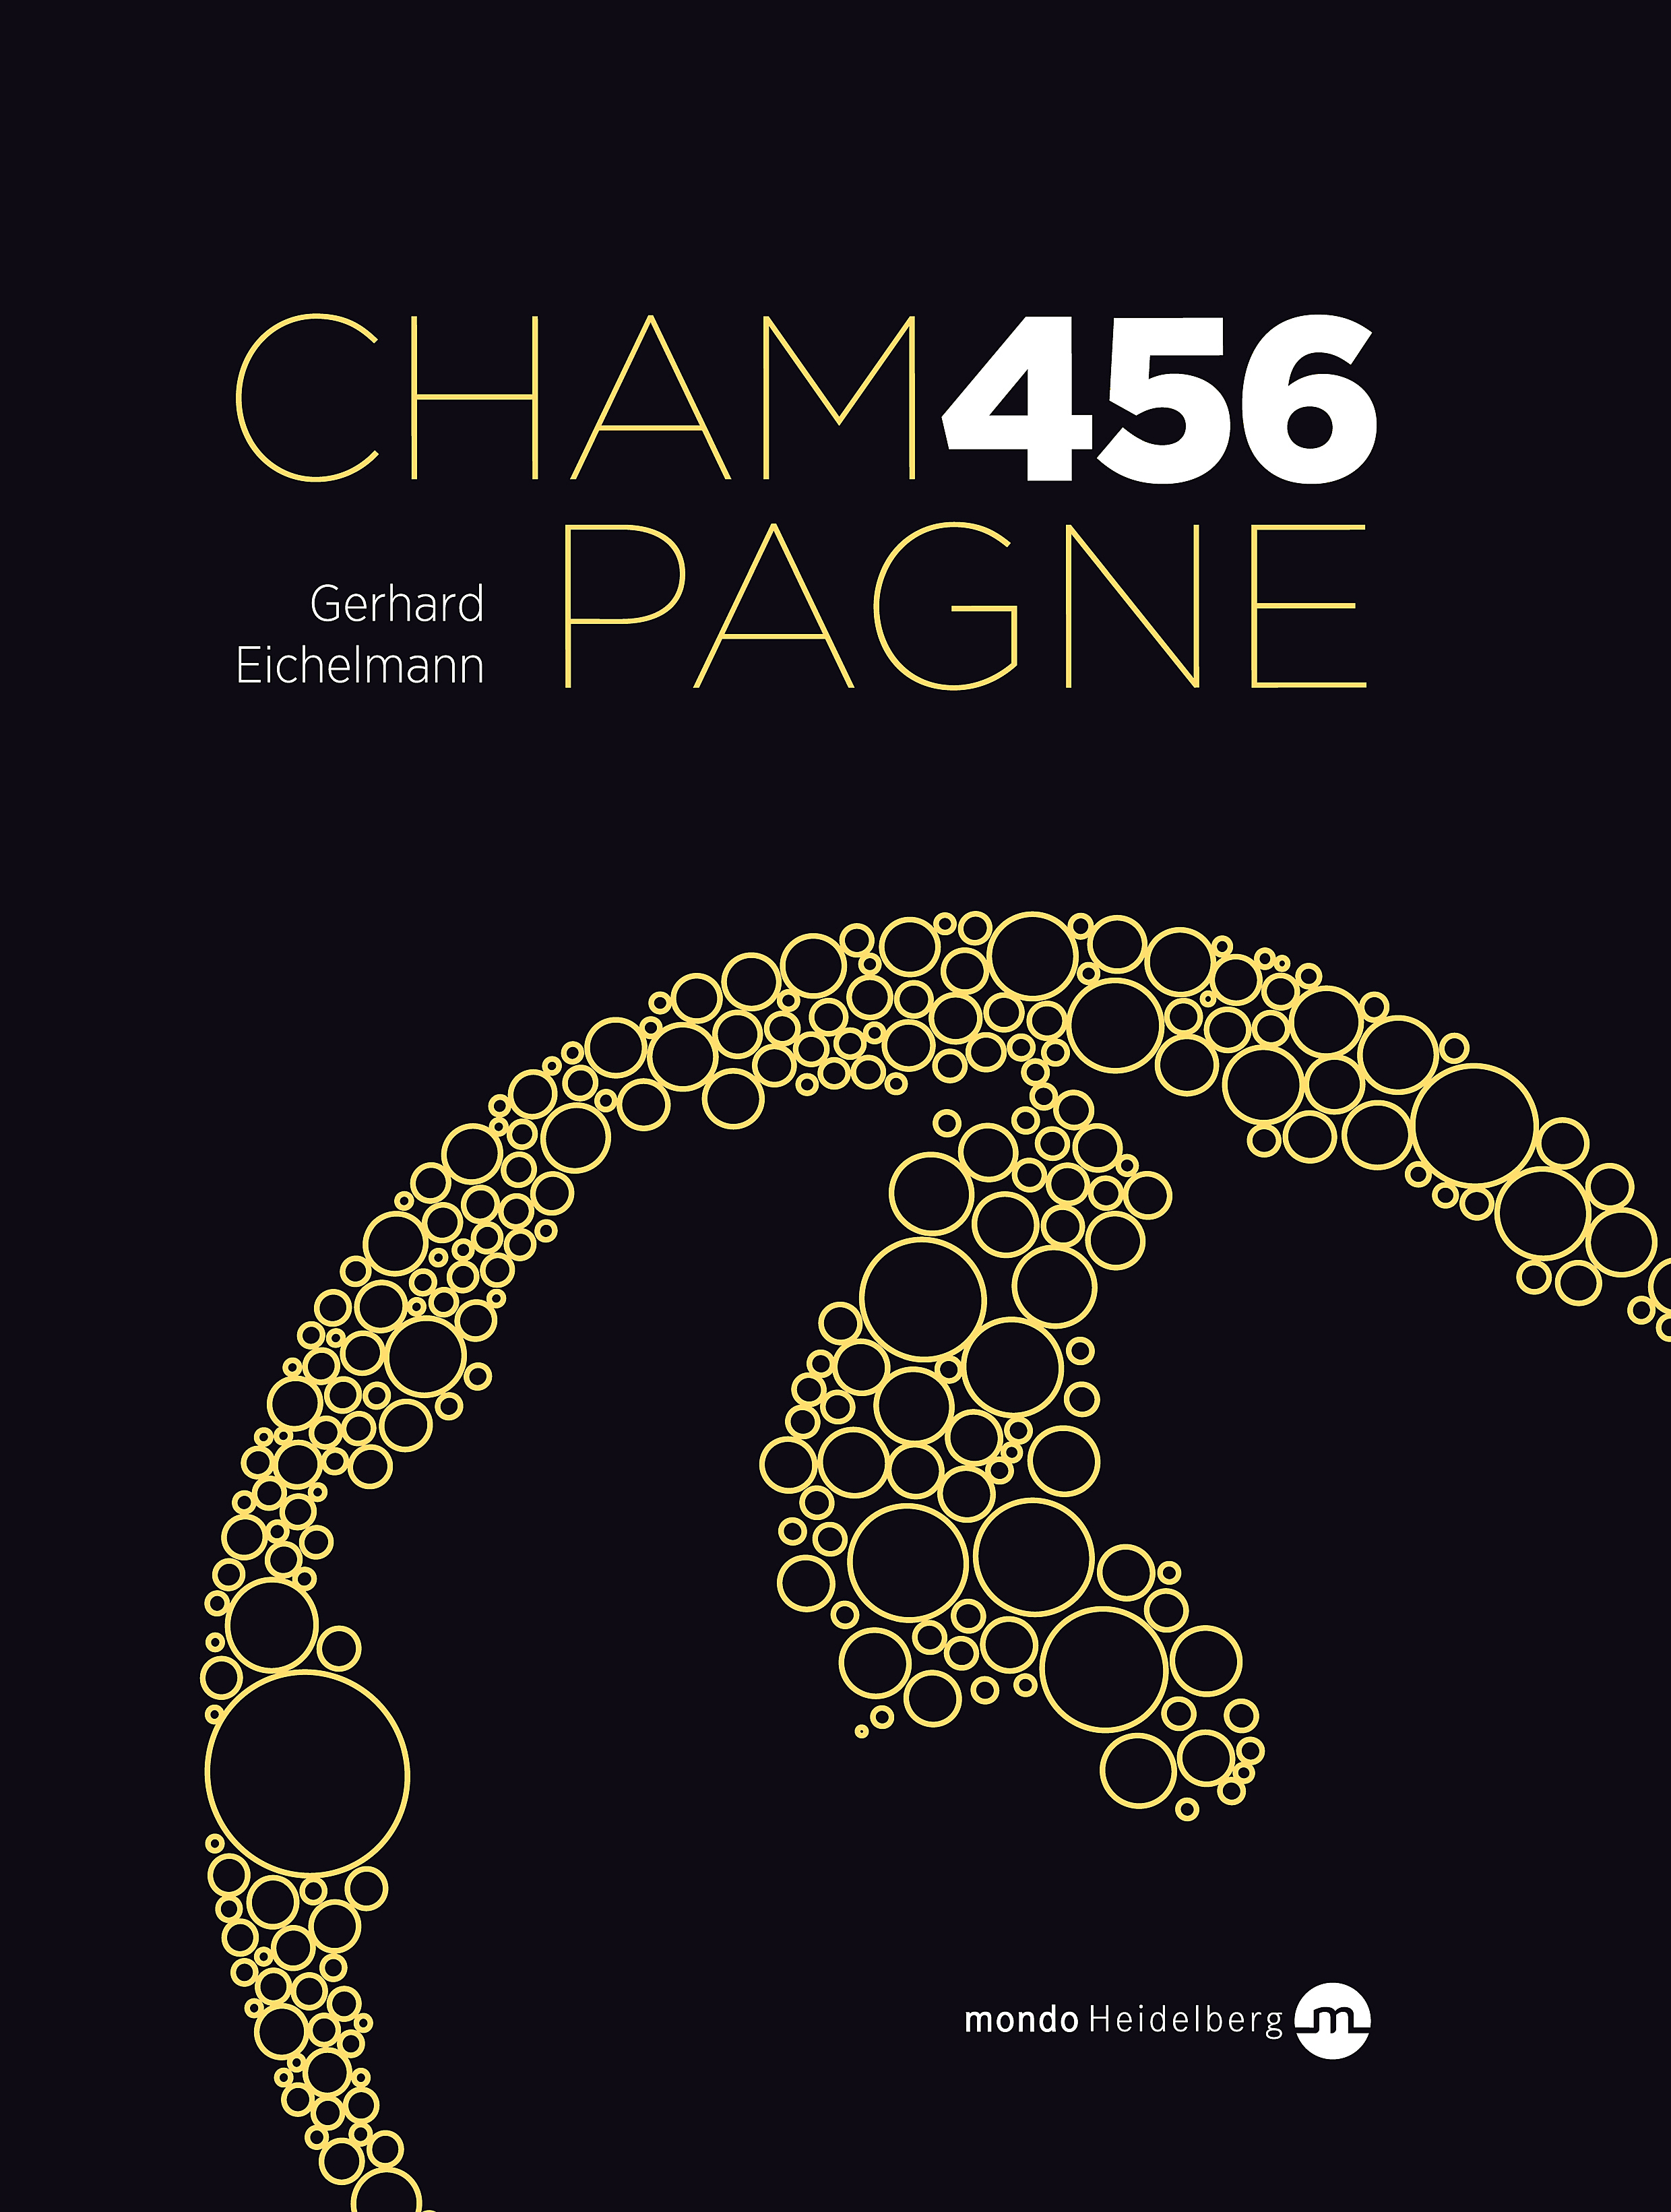 Champagne 456 - Gerhard Eichelmann